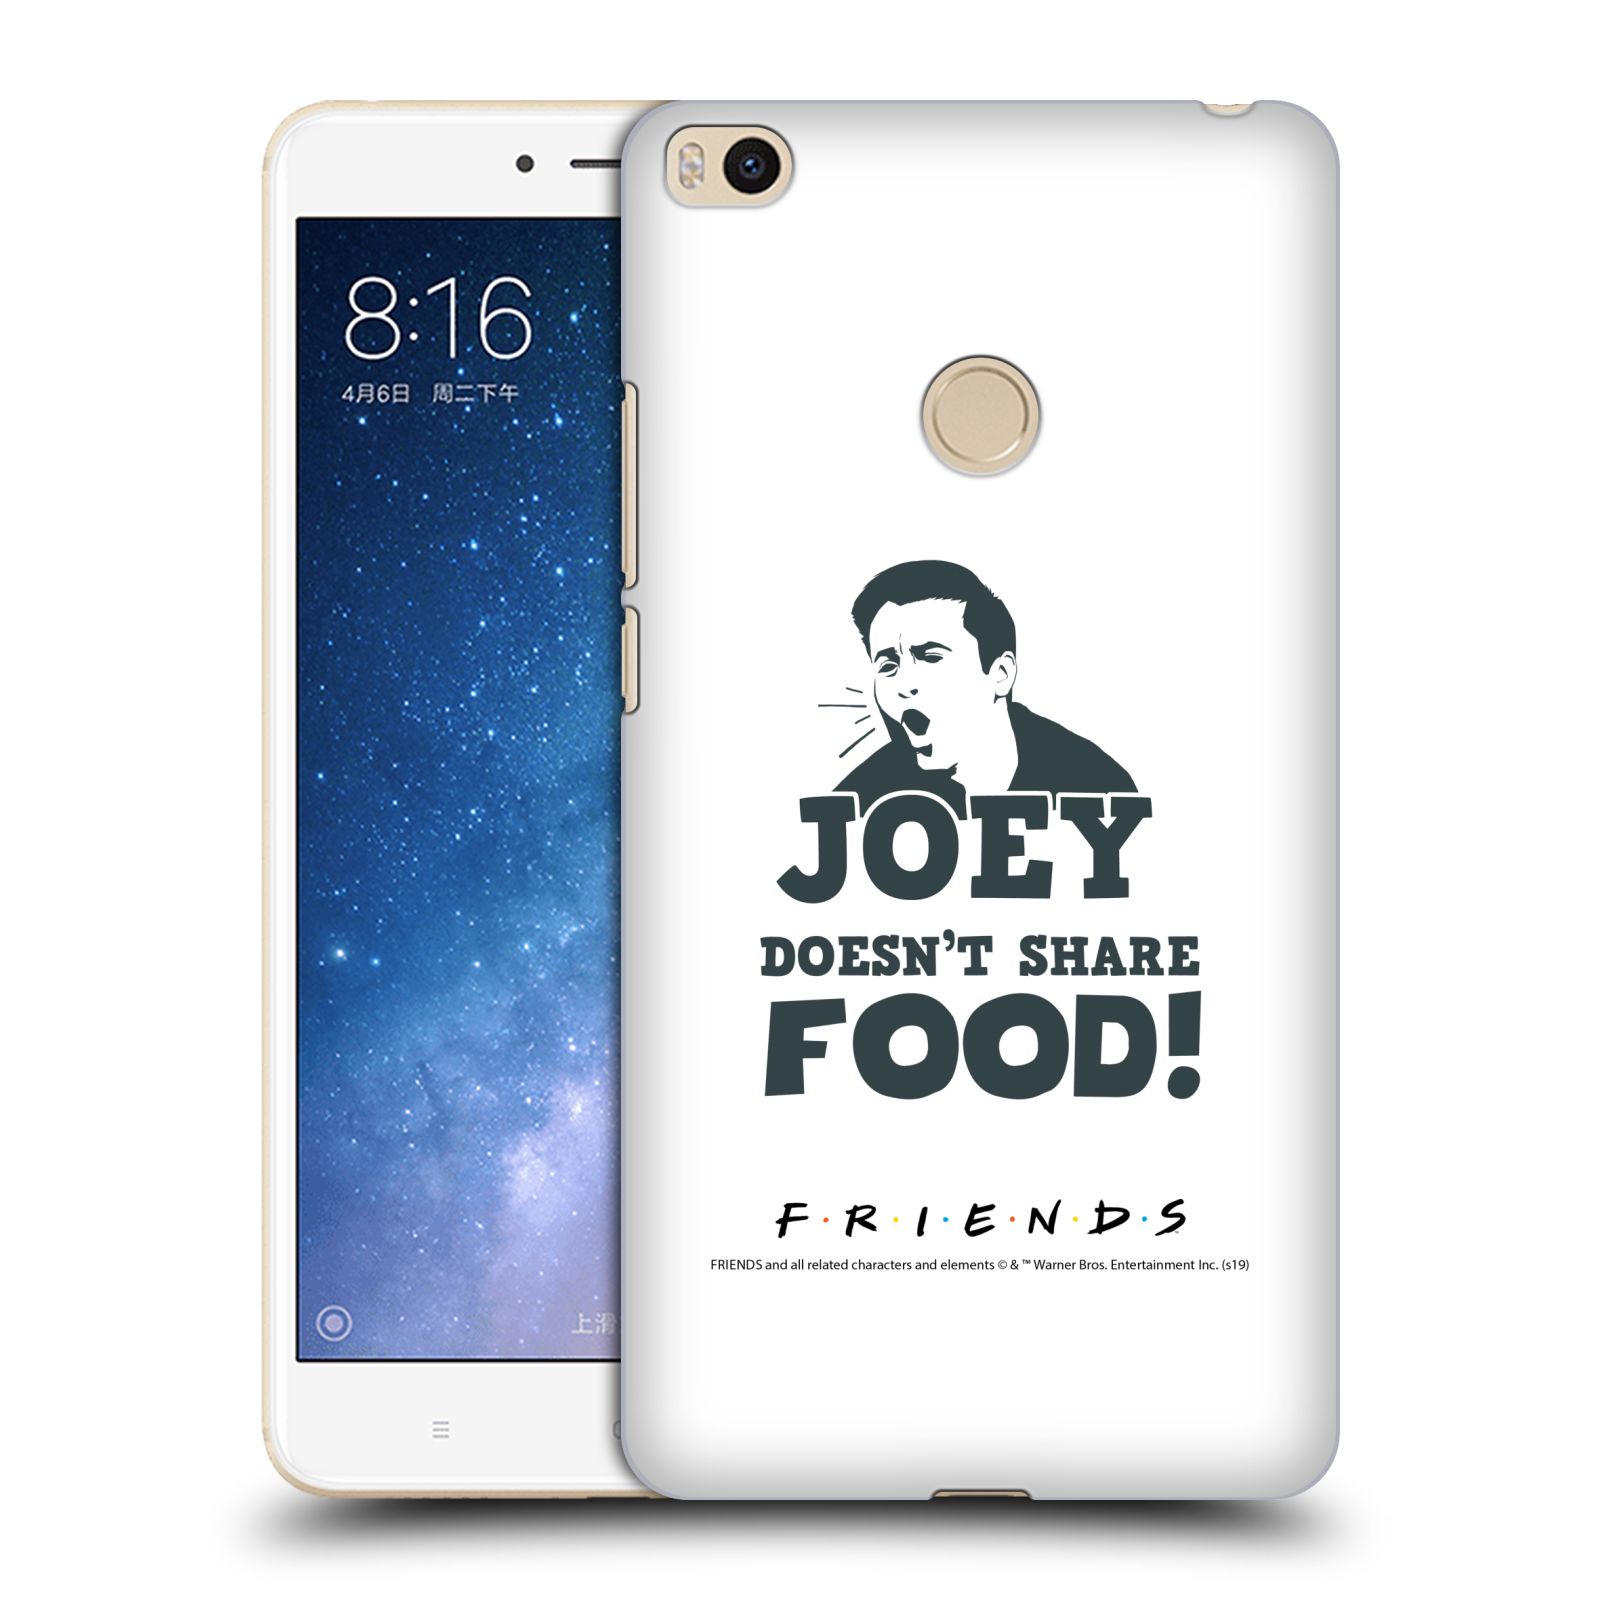 Pouzdro na mobil Xiaomi Mi Max 2 - HEAD CASE - Seriál Přátelé - Joey se o jídlo nedělí